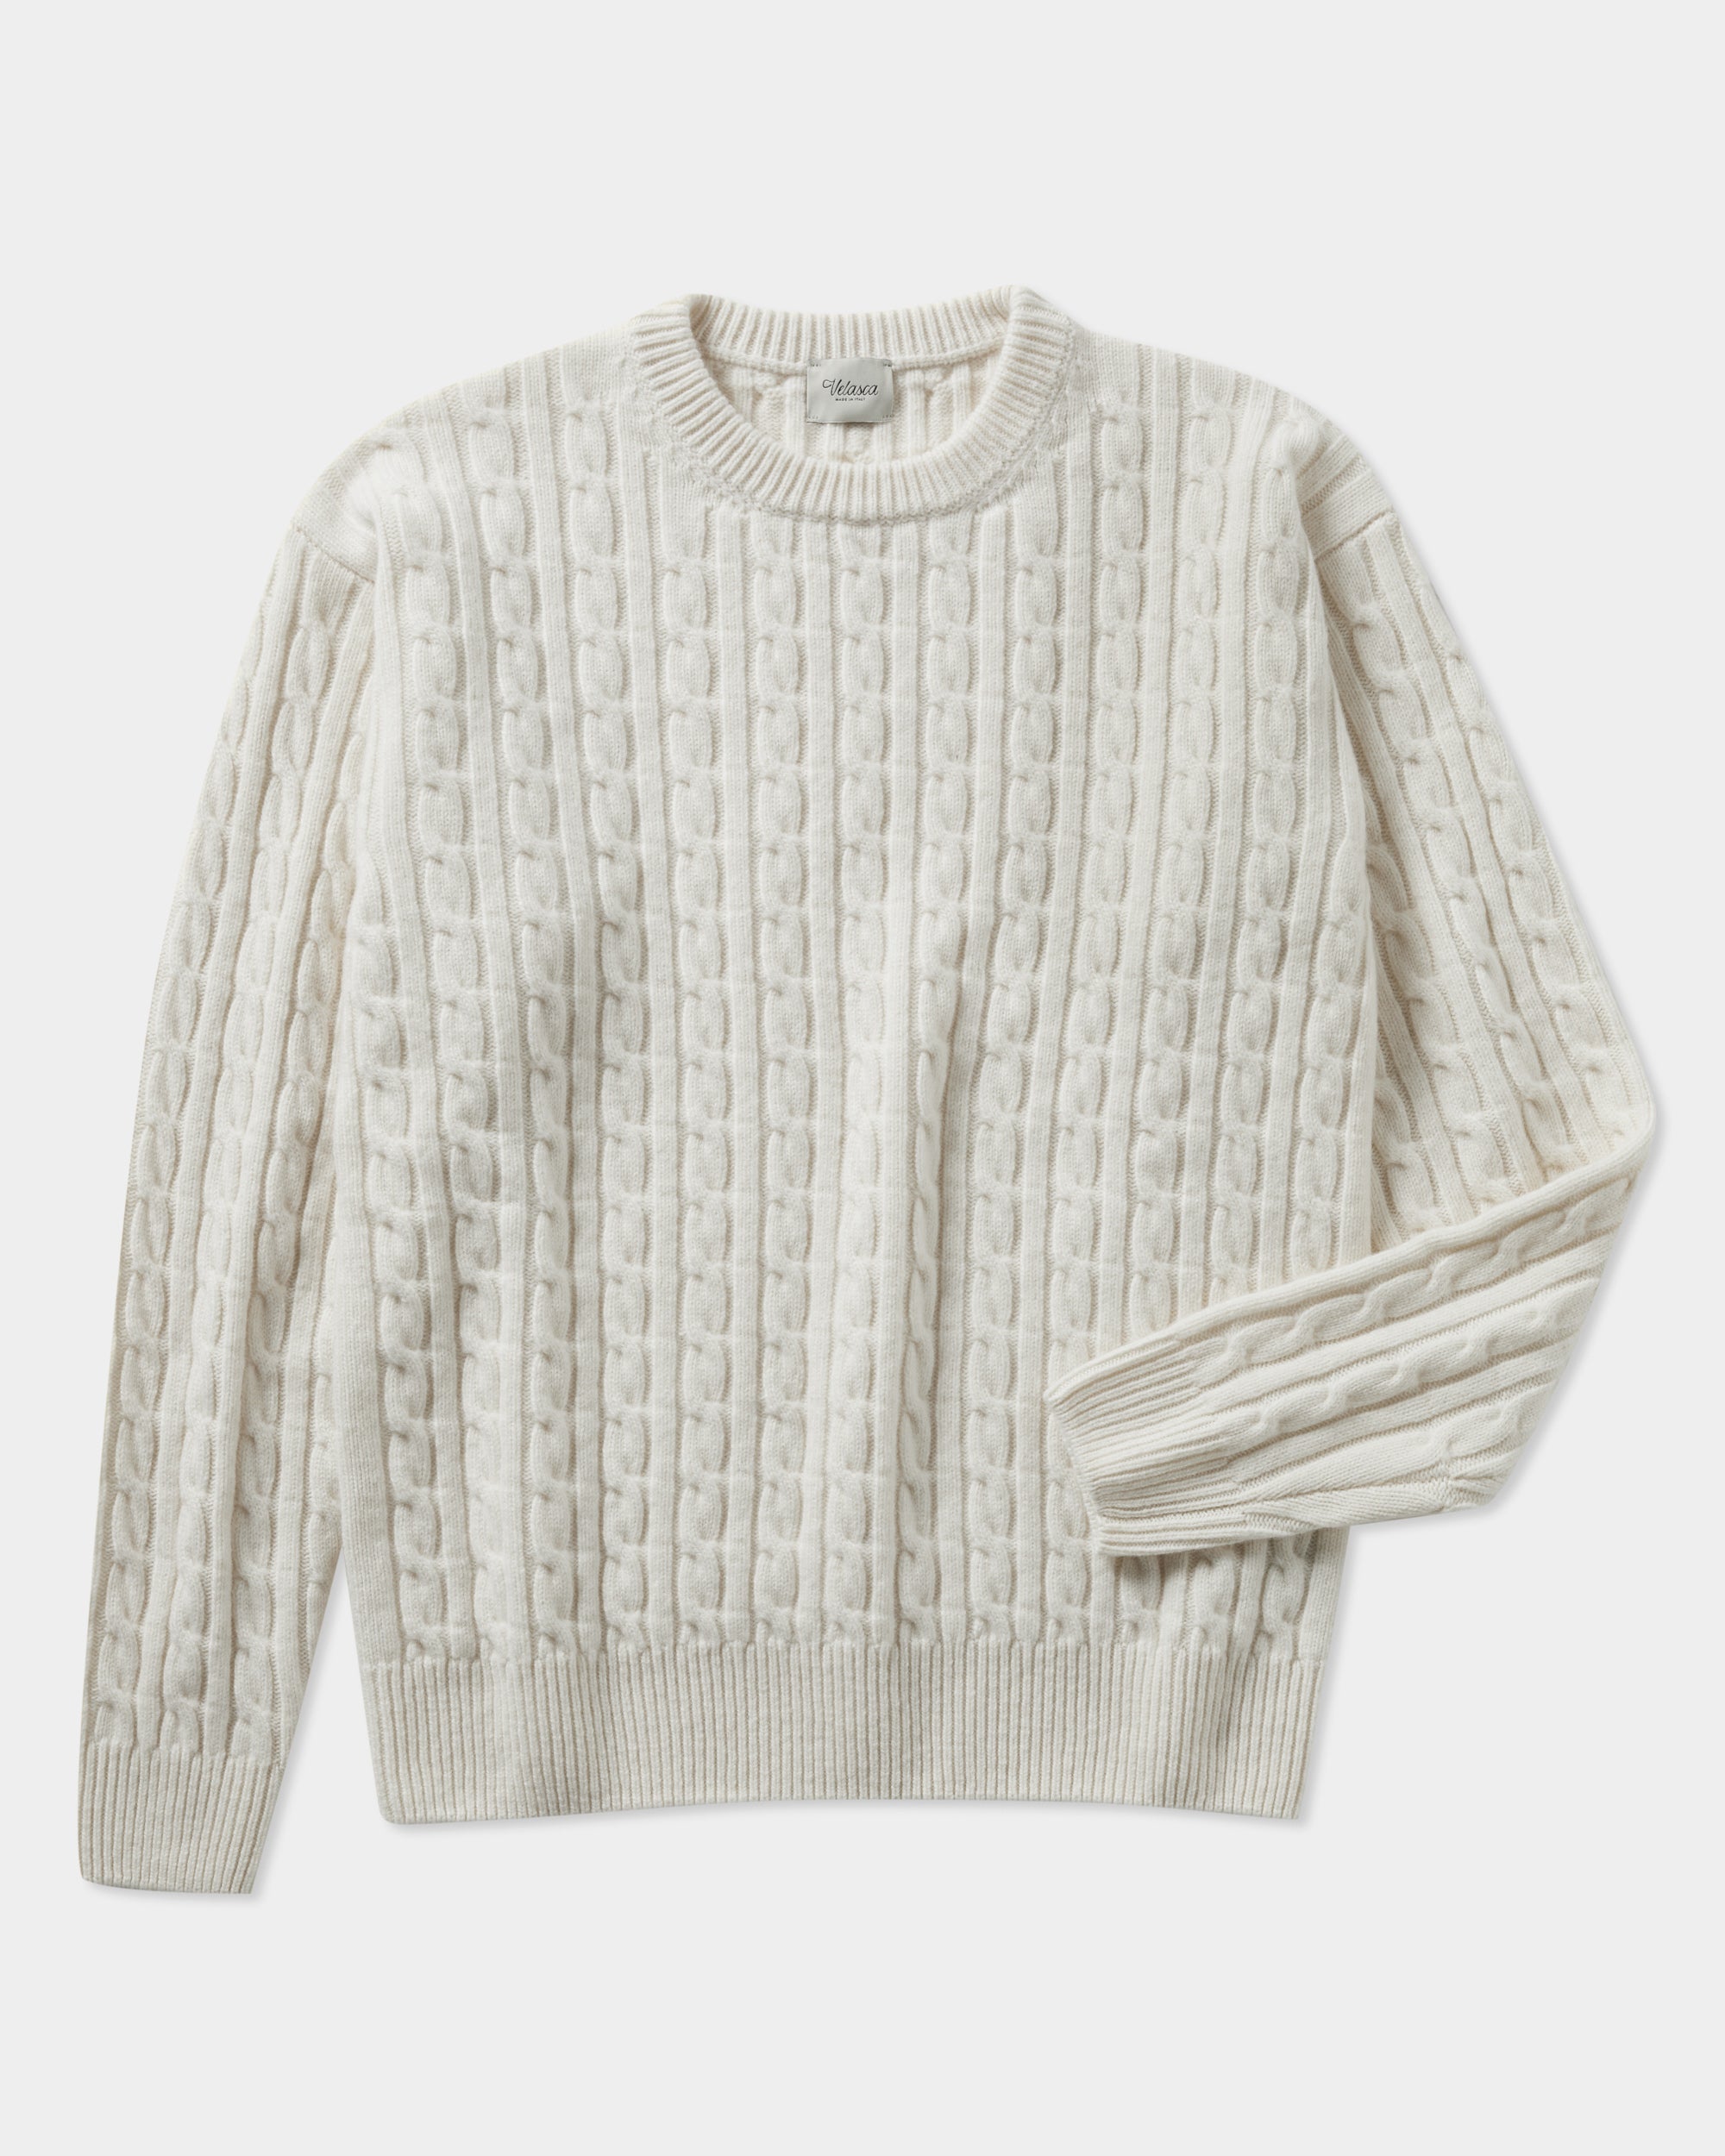 Sweater Merino Lana para Hombre - Koshkil